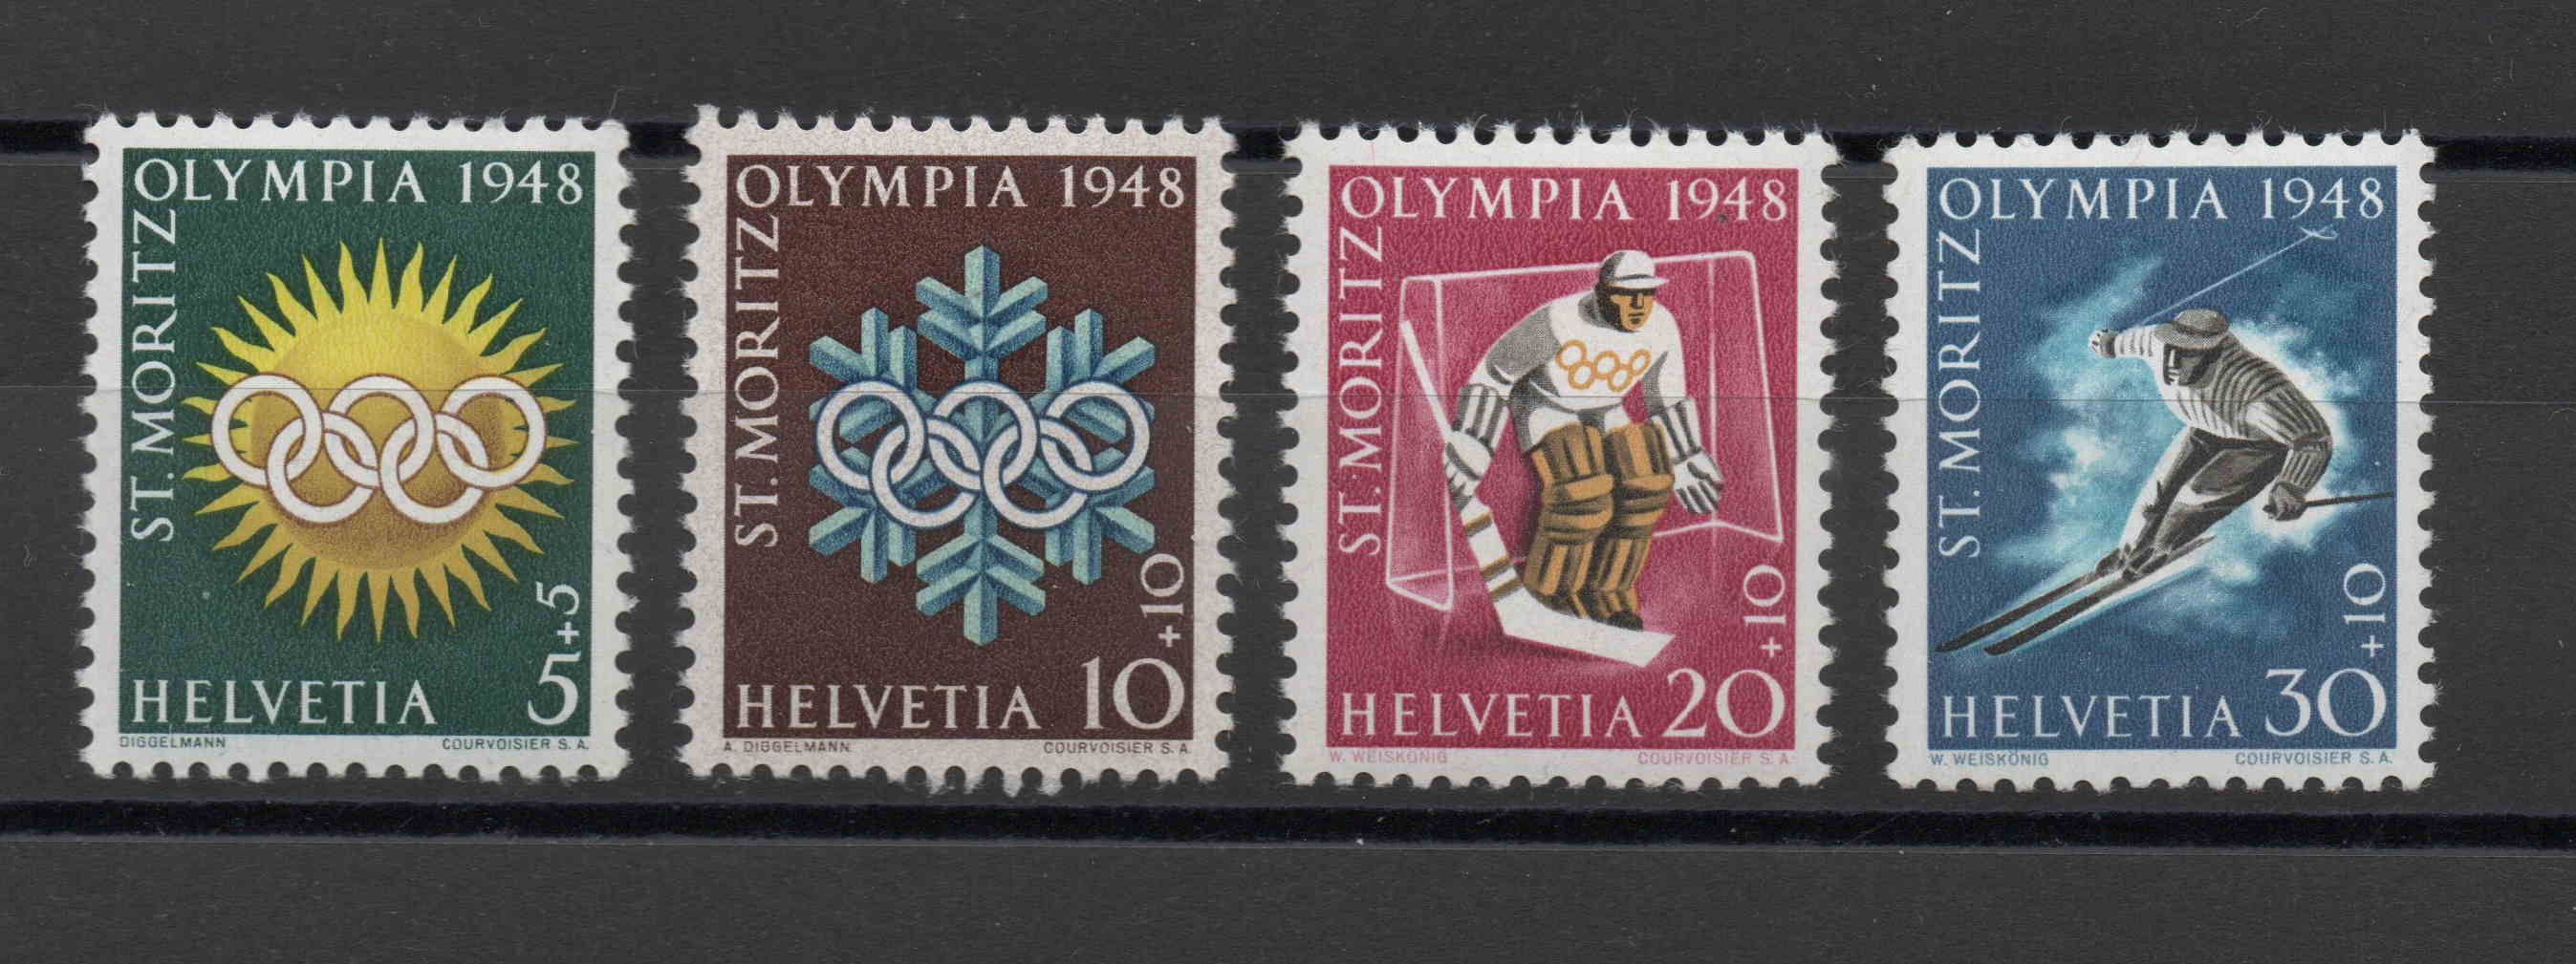 SA Sondermarken für die Olymp. Spiele St. Moritz 1948 pf